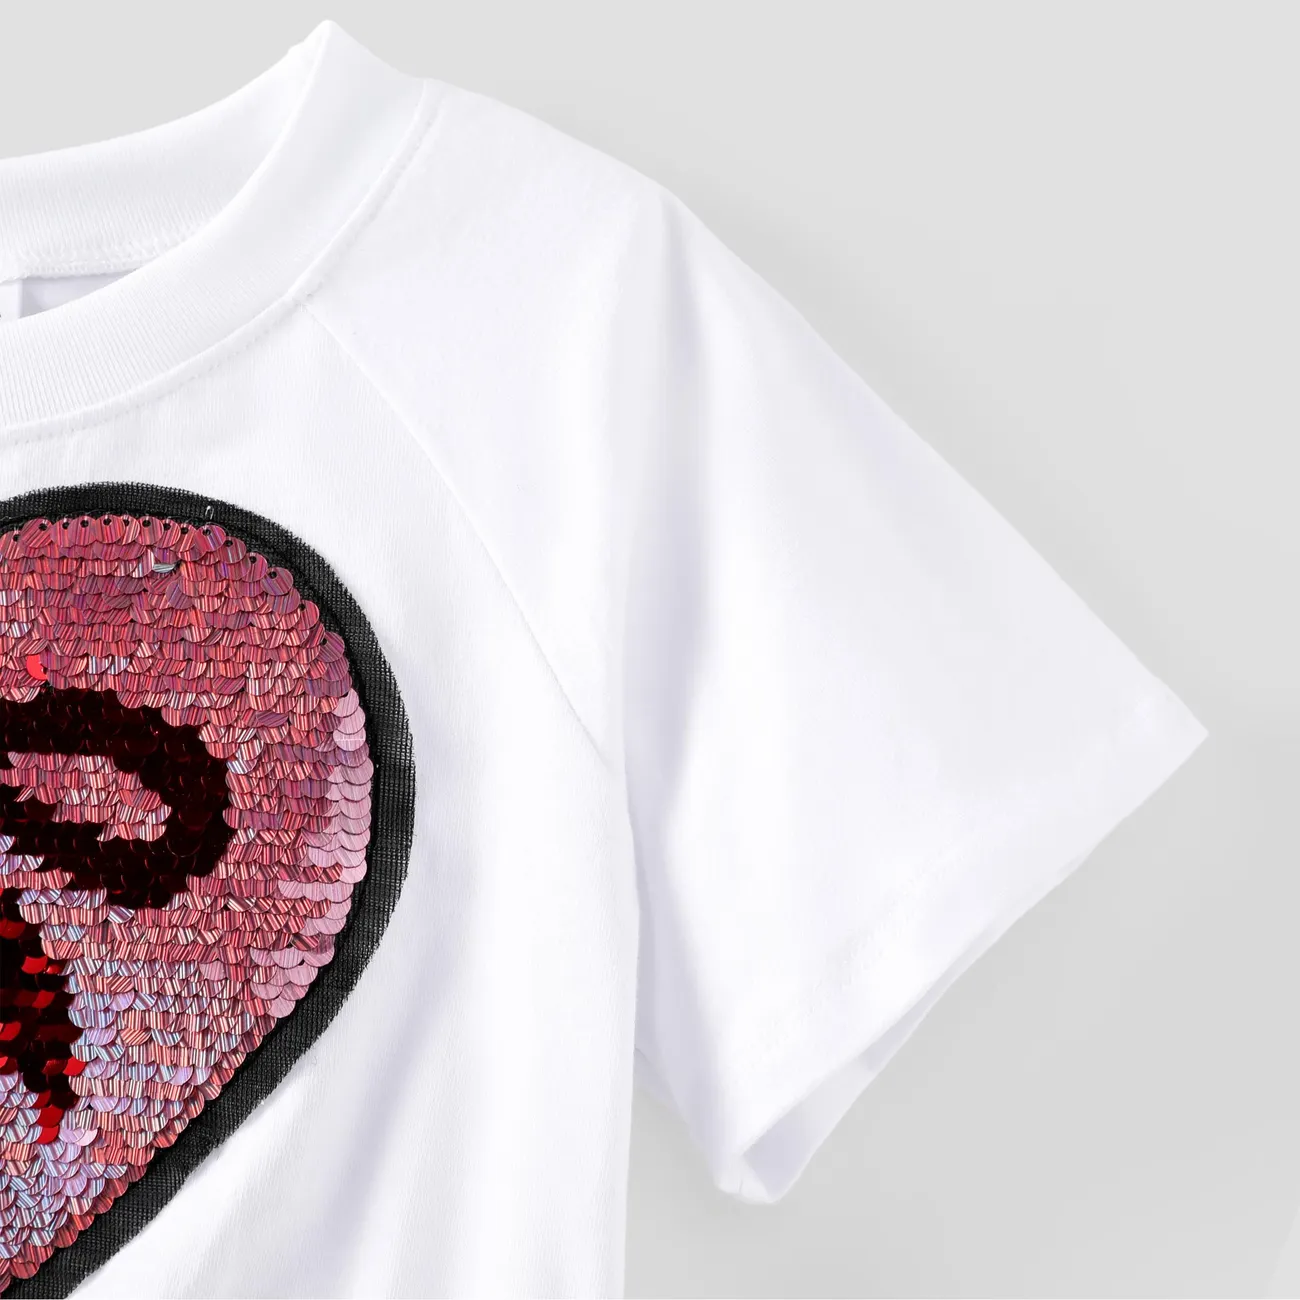 Kleinkind / Kind Mädchen 2pcs Herz Pailletten Stickerei Crop T-Shirt und Band Rock Set pinkywhite big image 1